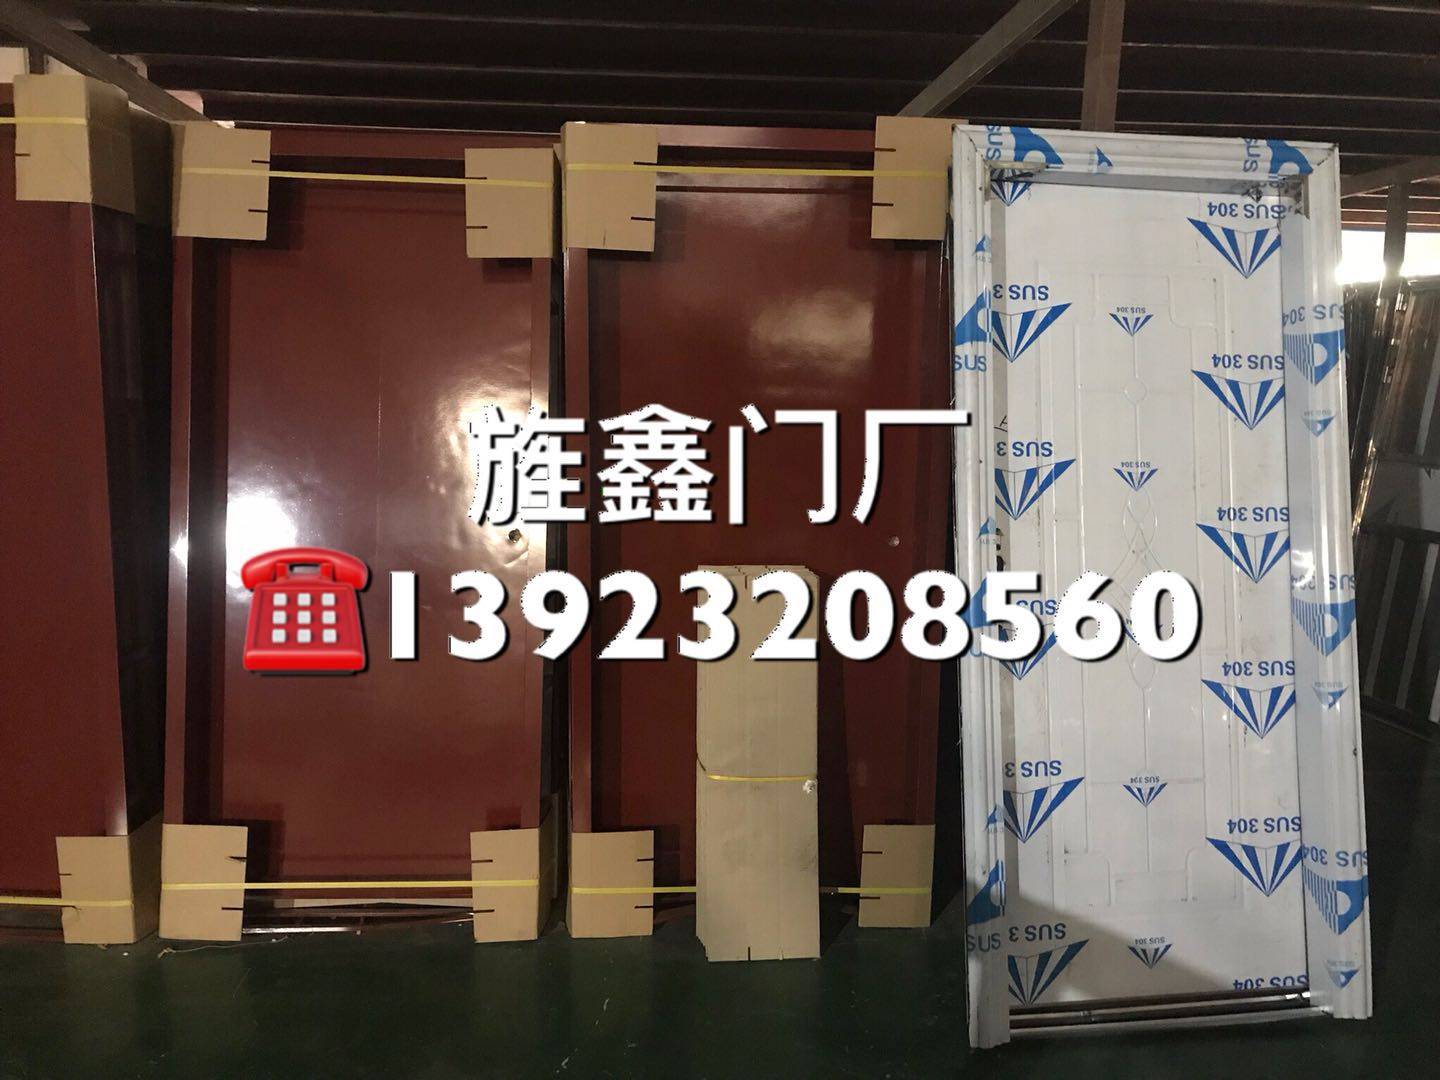 钢质门  复合门  铁门  学校门厂家  170元/套  大型工厂  质量保